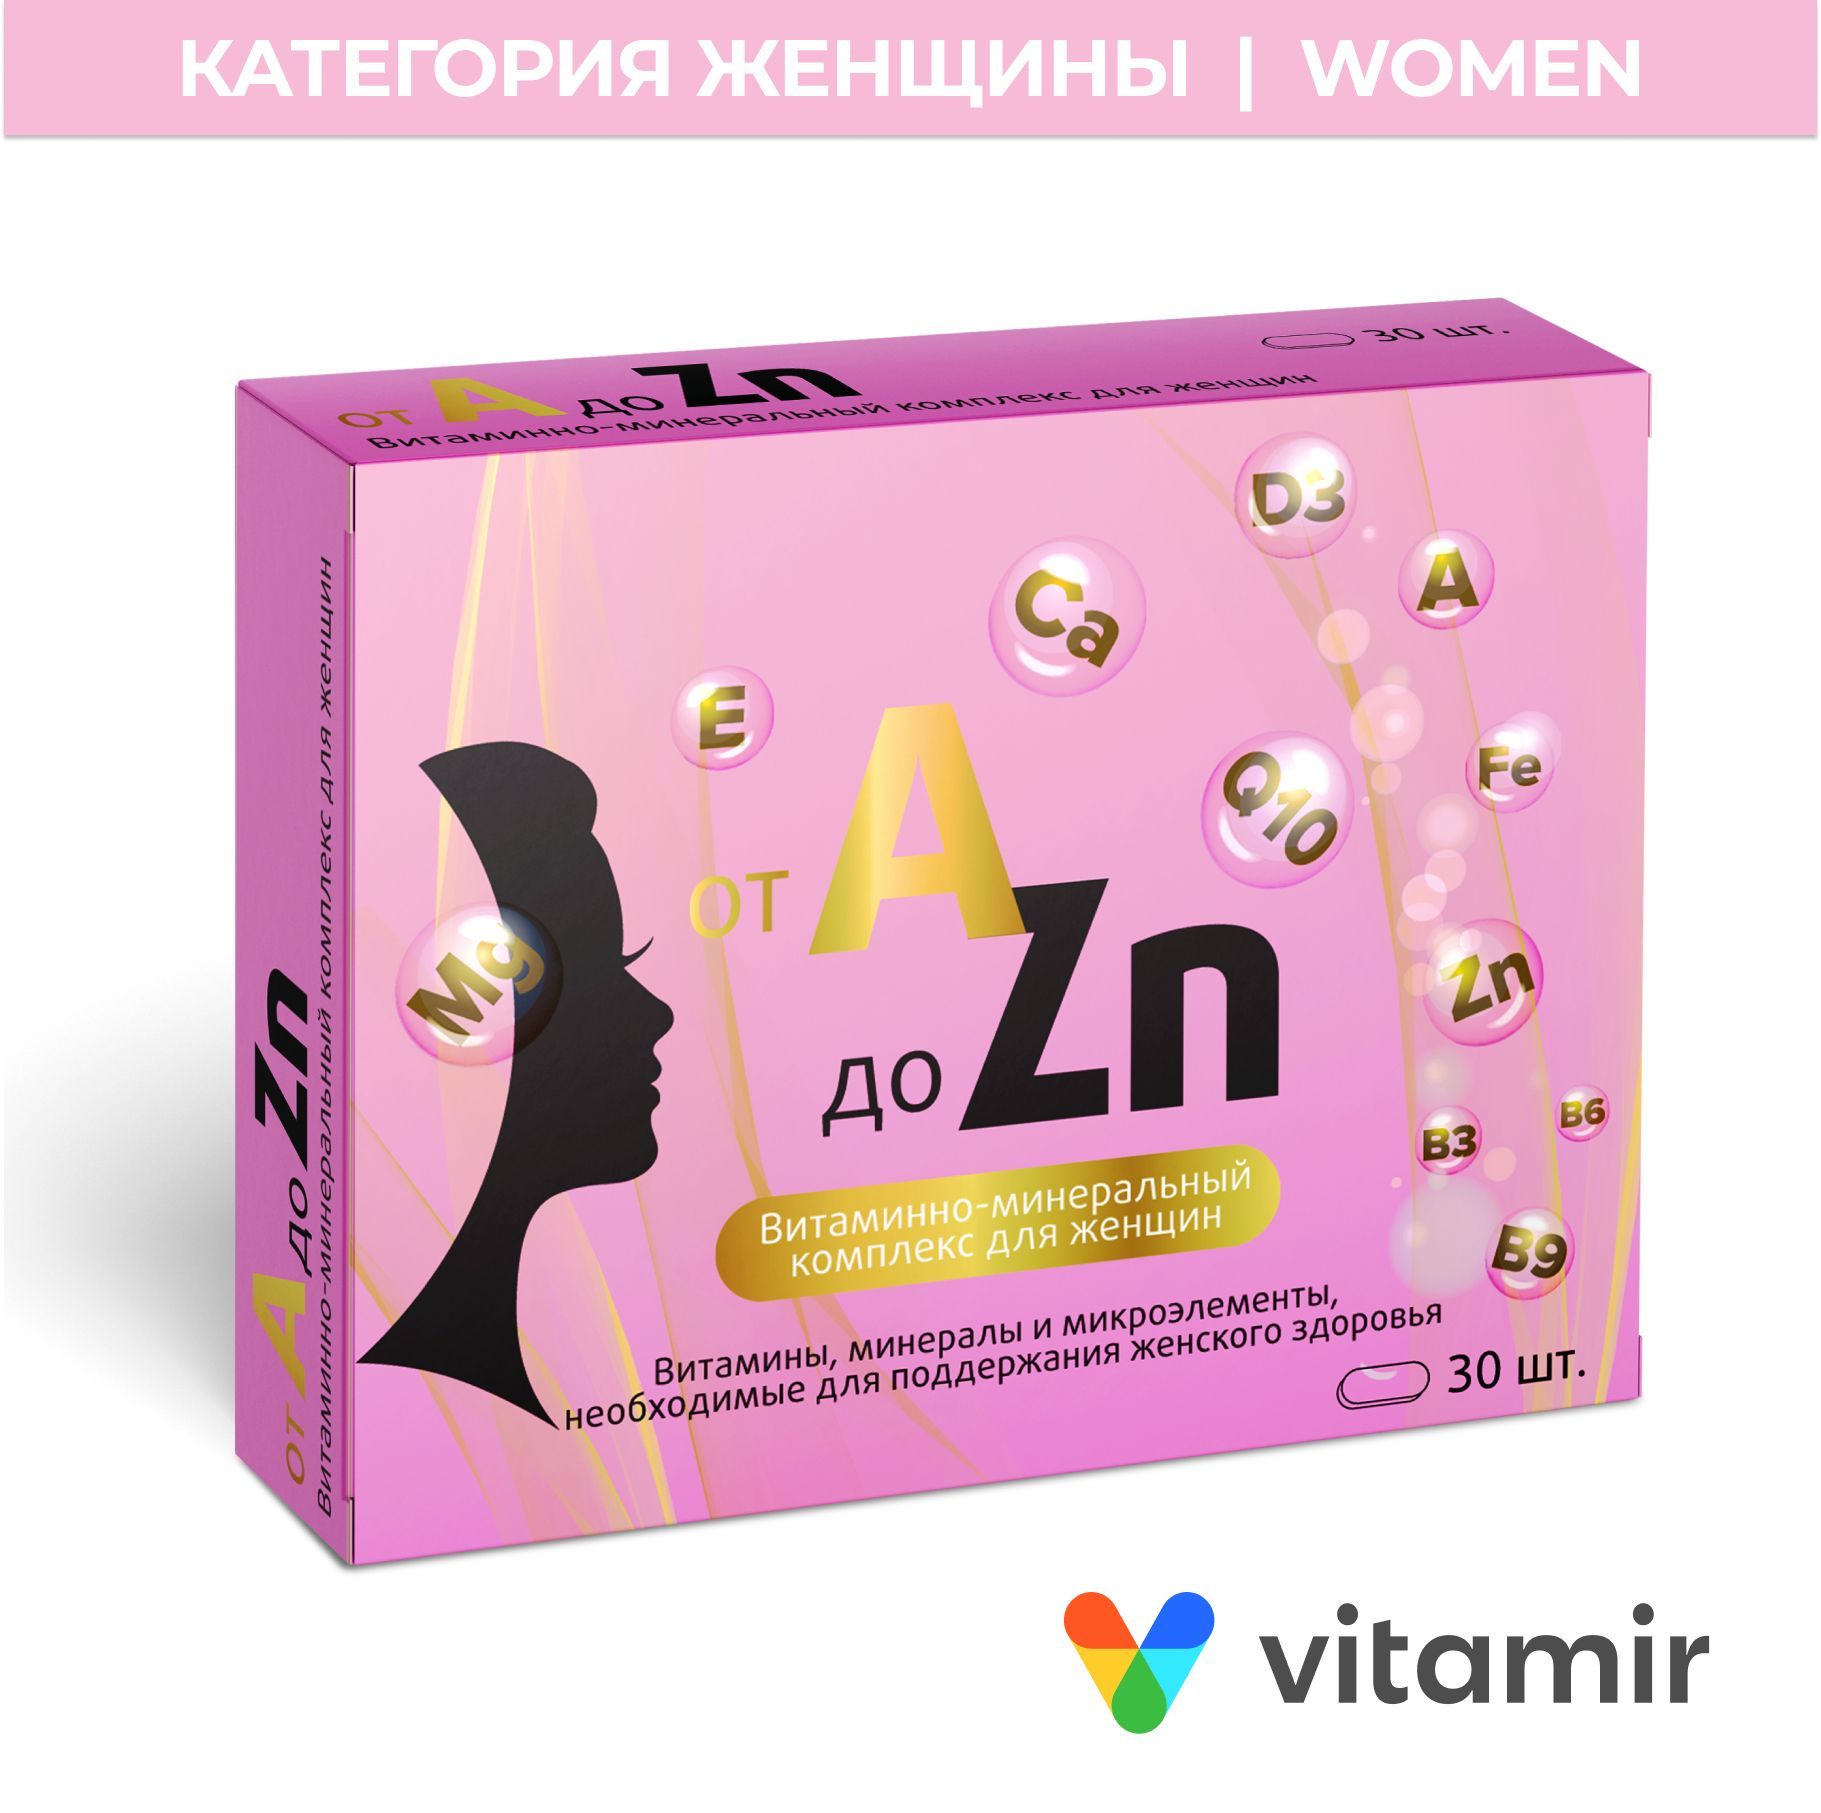 Витамин отзывы покупателей и врачей. Витаминный комплекс а-ZN для женщин таб., 30 шт.. Витаминный комплекс a-ZN для женщин ZN 30. Витаминный комплекс для женщин a-ZN n30 табл. Витаминно-минеральный комплекс для женщин от a до ZN таблетки 30.